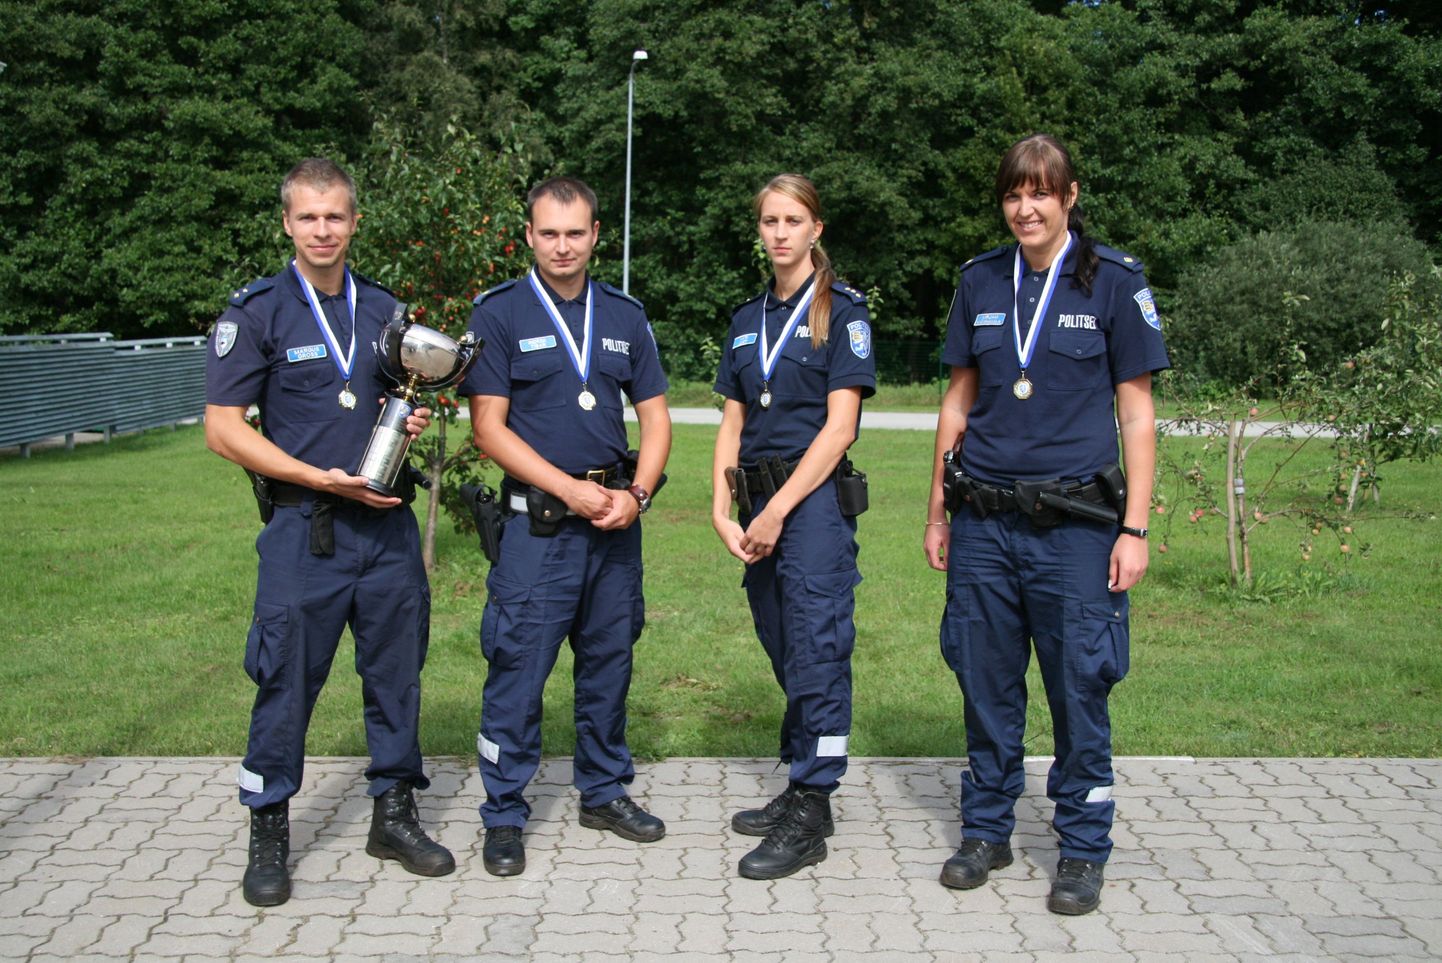 Politsei kutsemeisterlikkuse võistluse võitjad. Vasakult Margus Gross, Indrek Tibar, Kati Luht ja Mirjam Männamaa.